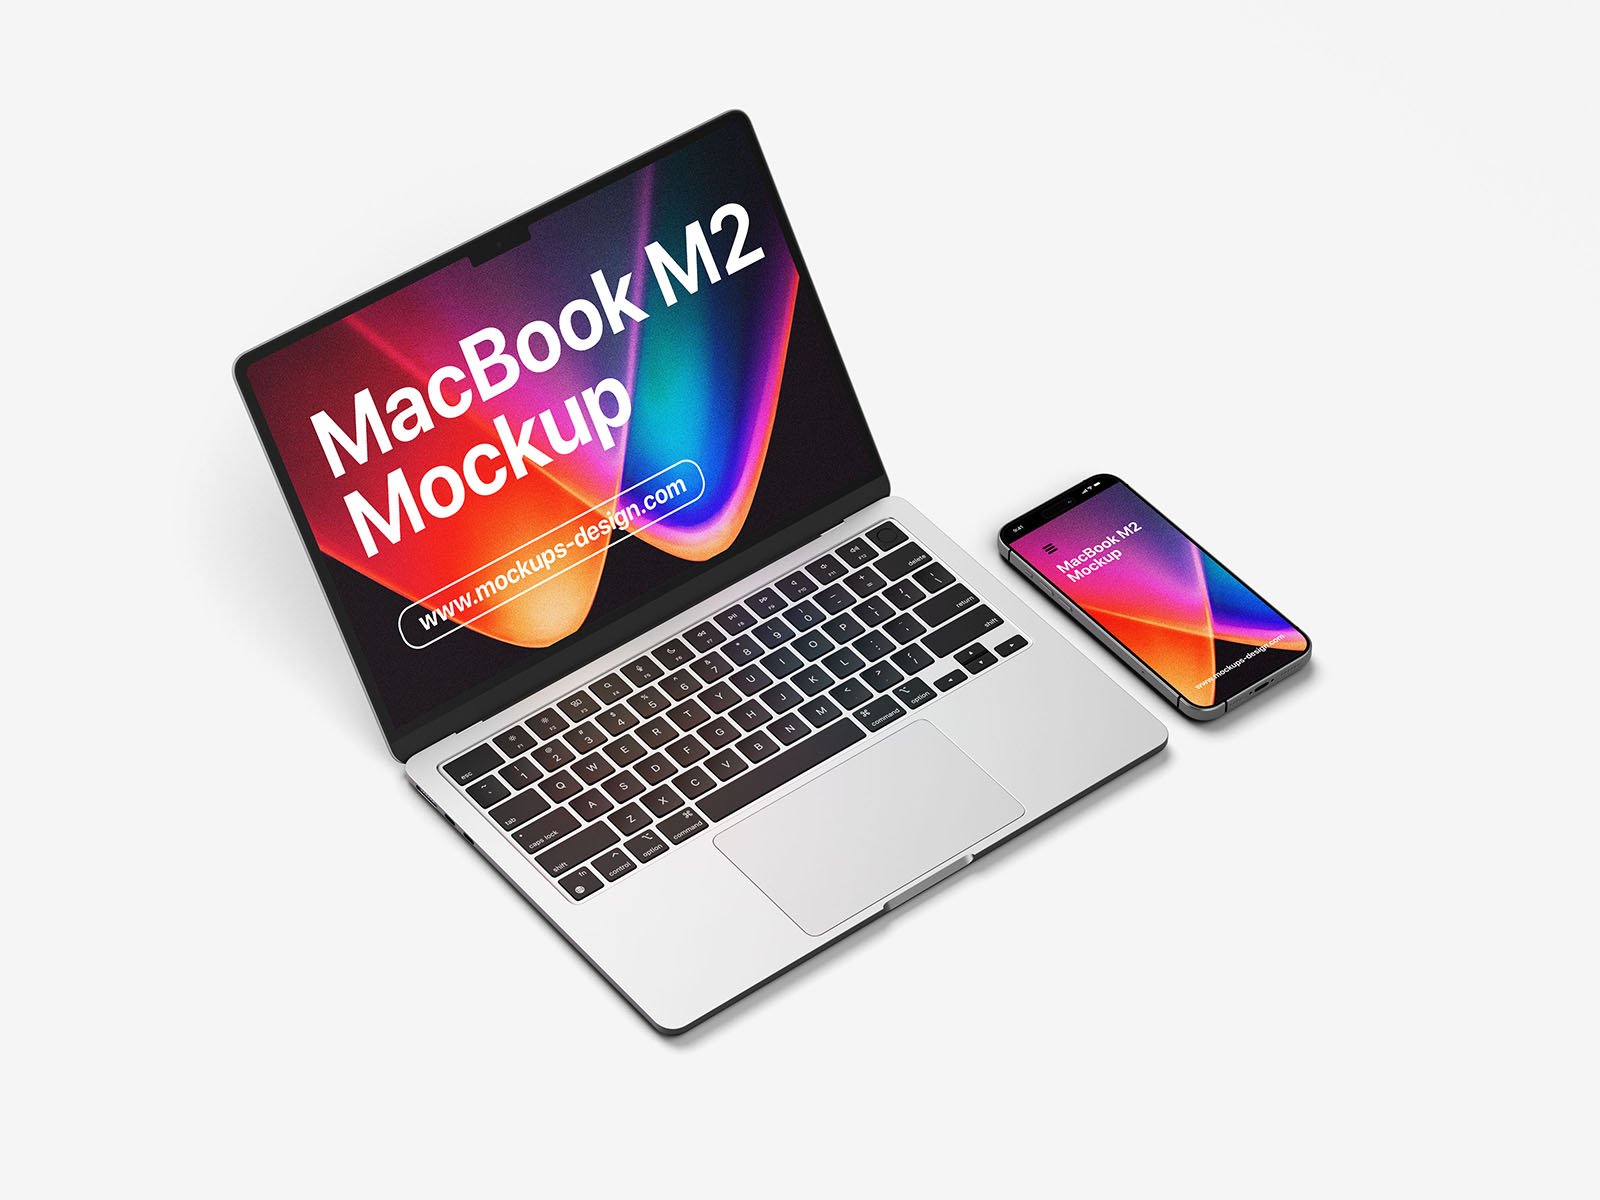 Free Macbook Air and iPhone Mockup